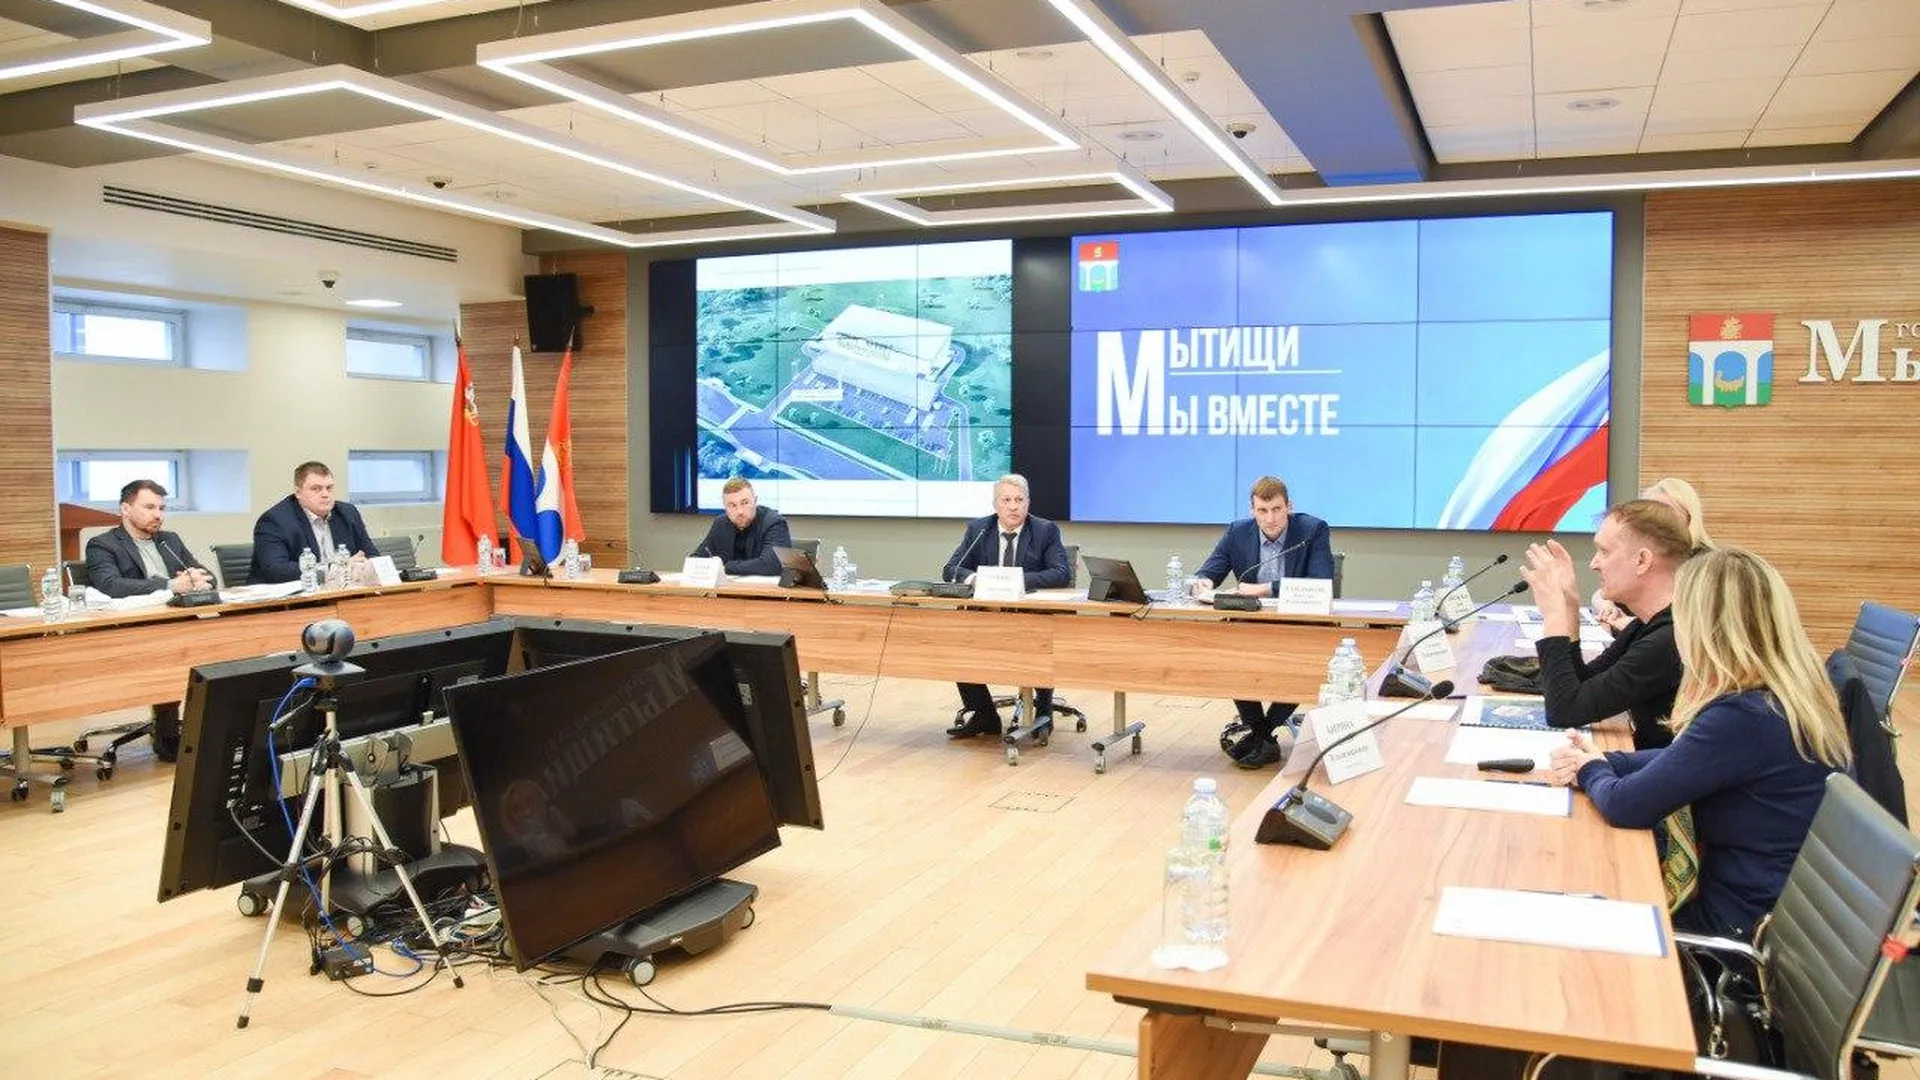 пресс-служба администрации городского округа Мытищи